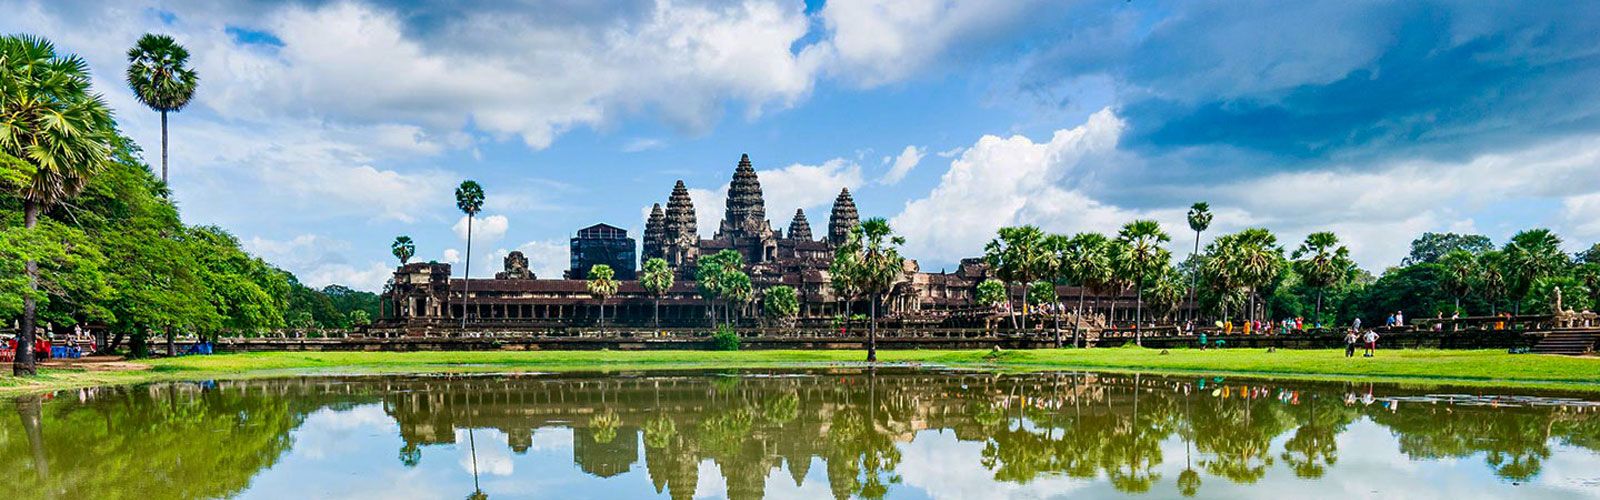 Cambodia Travel Guide | Asianventure Tours